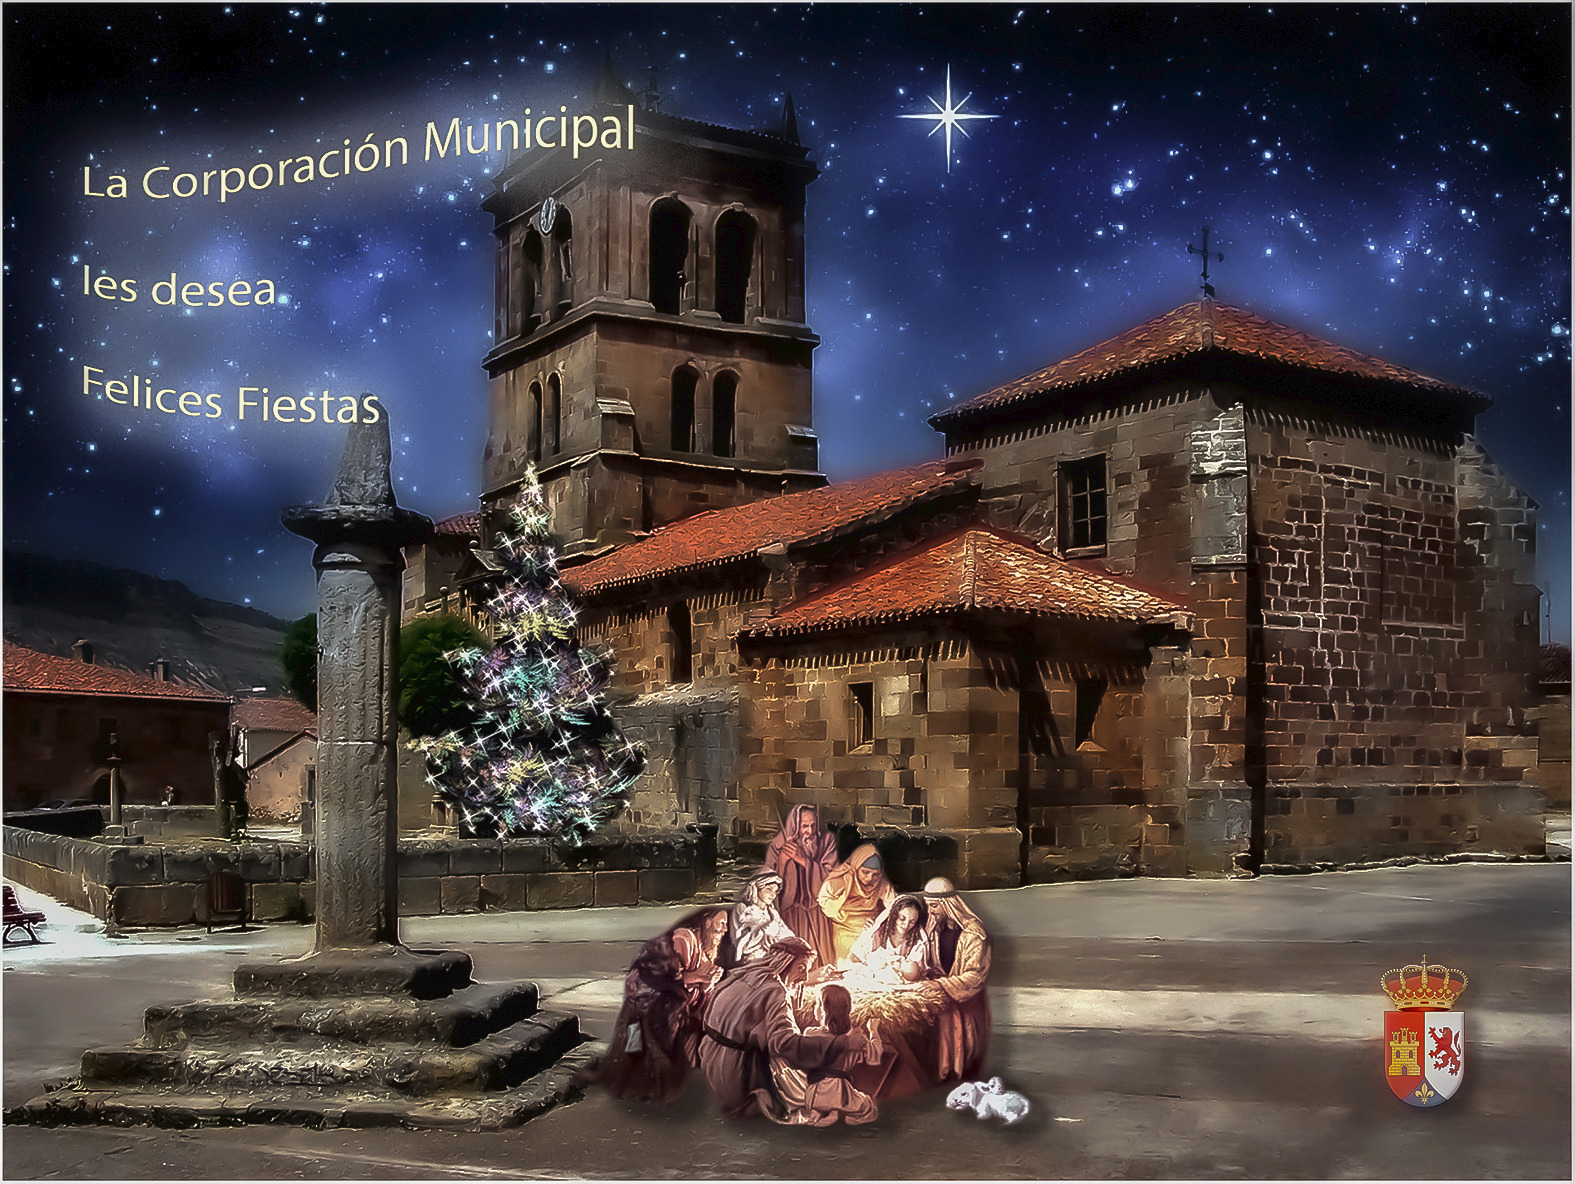 La Corporación Municipal os desea ¡Felices Fiestas!